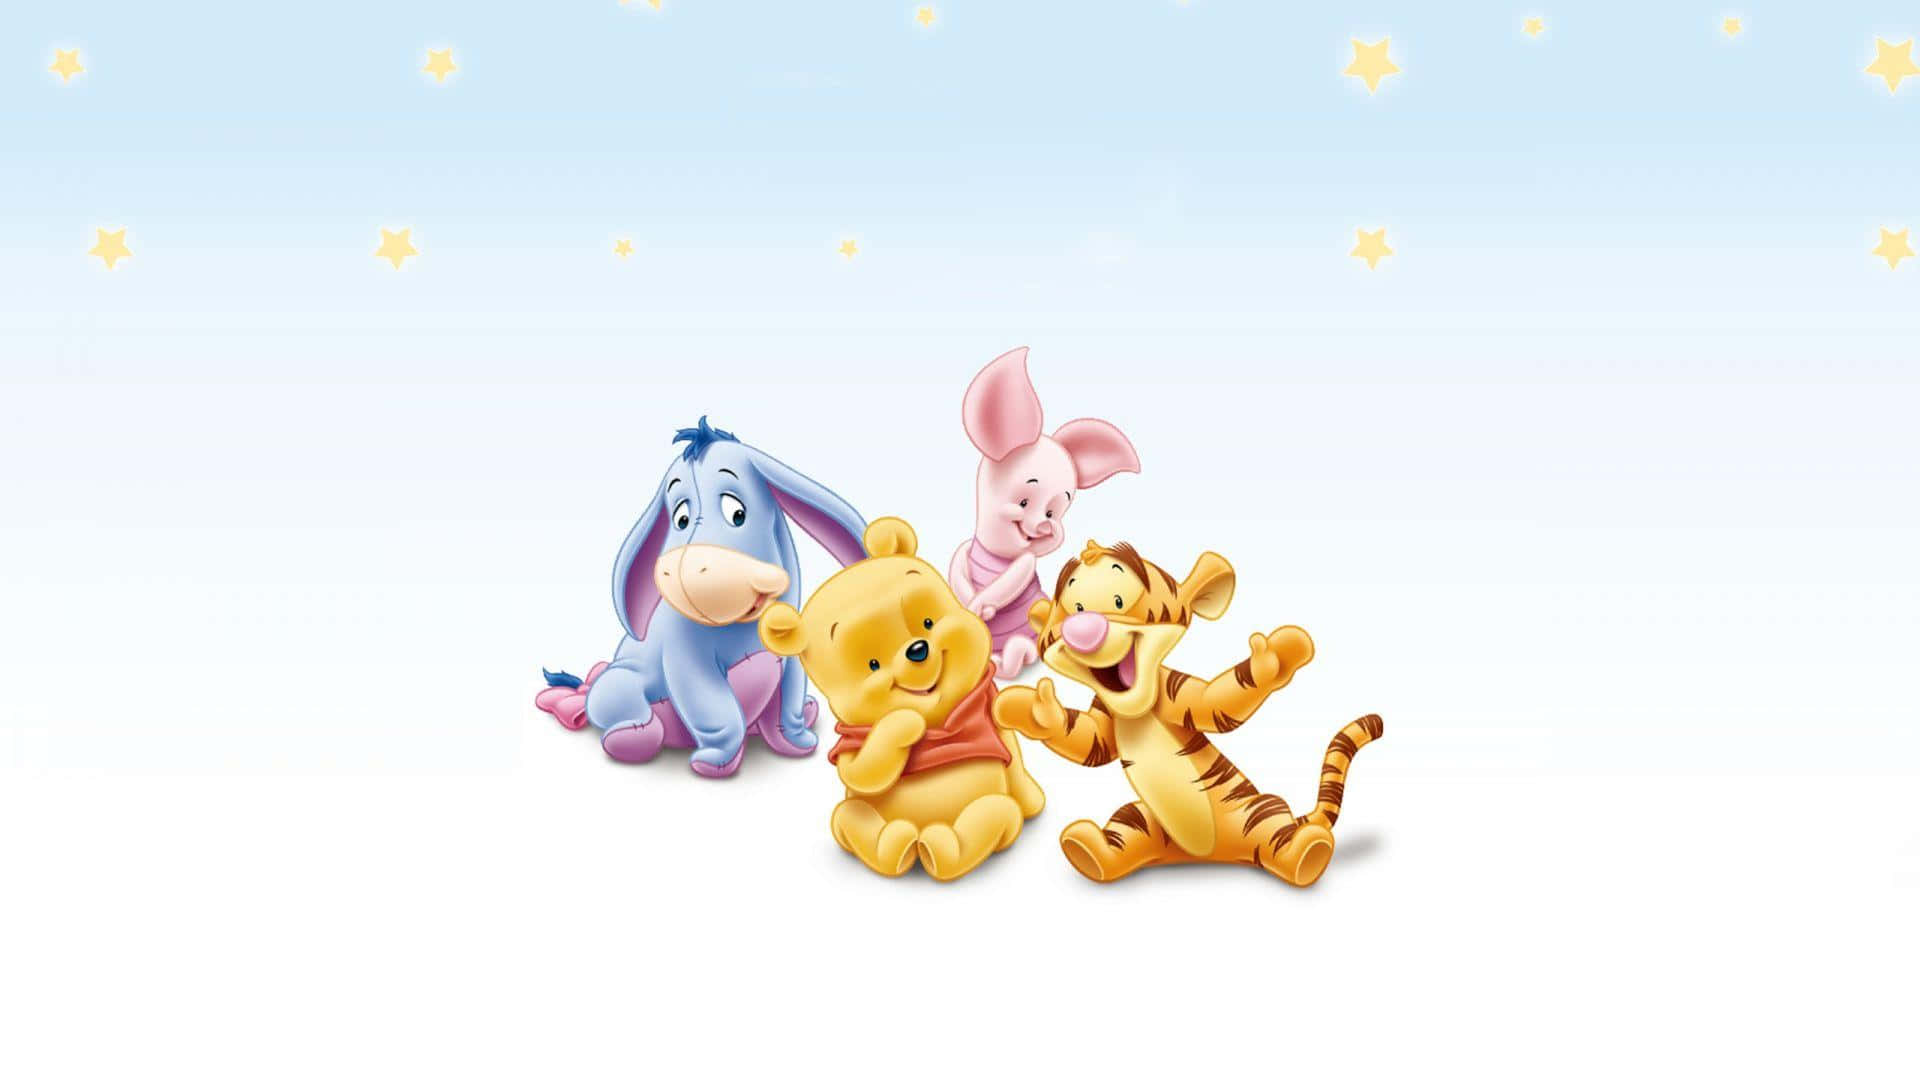 Migliorsfondo Disney Con Il Piccolo Winnie The Pooh E I Suoi Amici